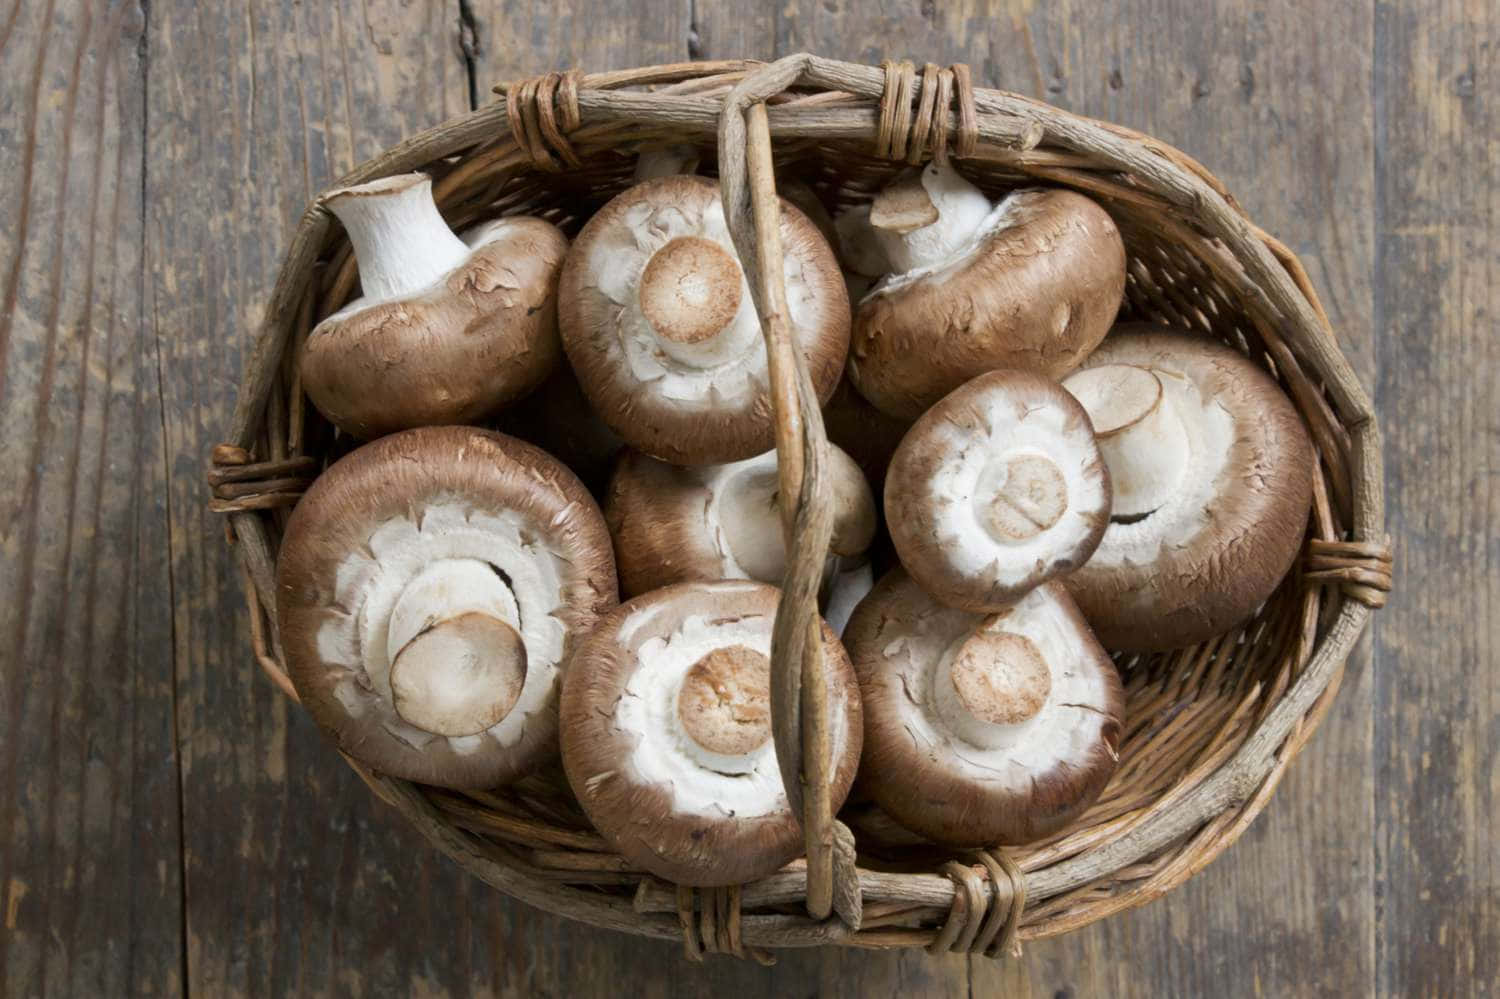 Imagensde Deliciosos Tipos De Cogumelos.